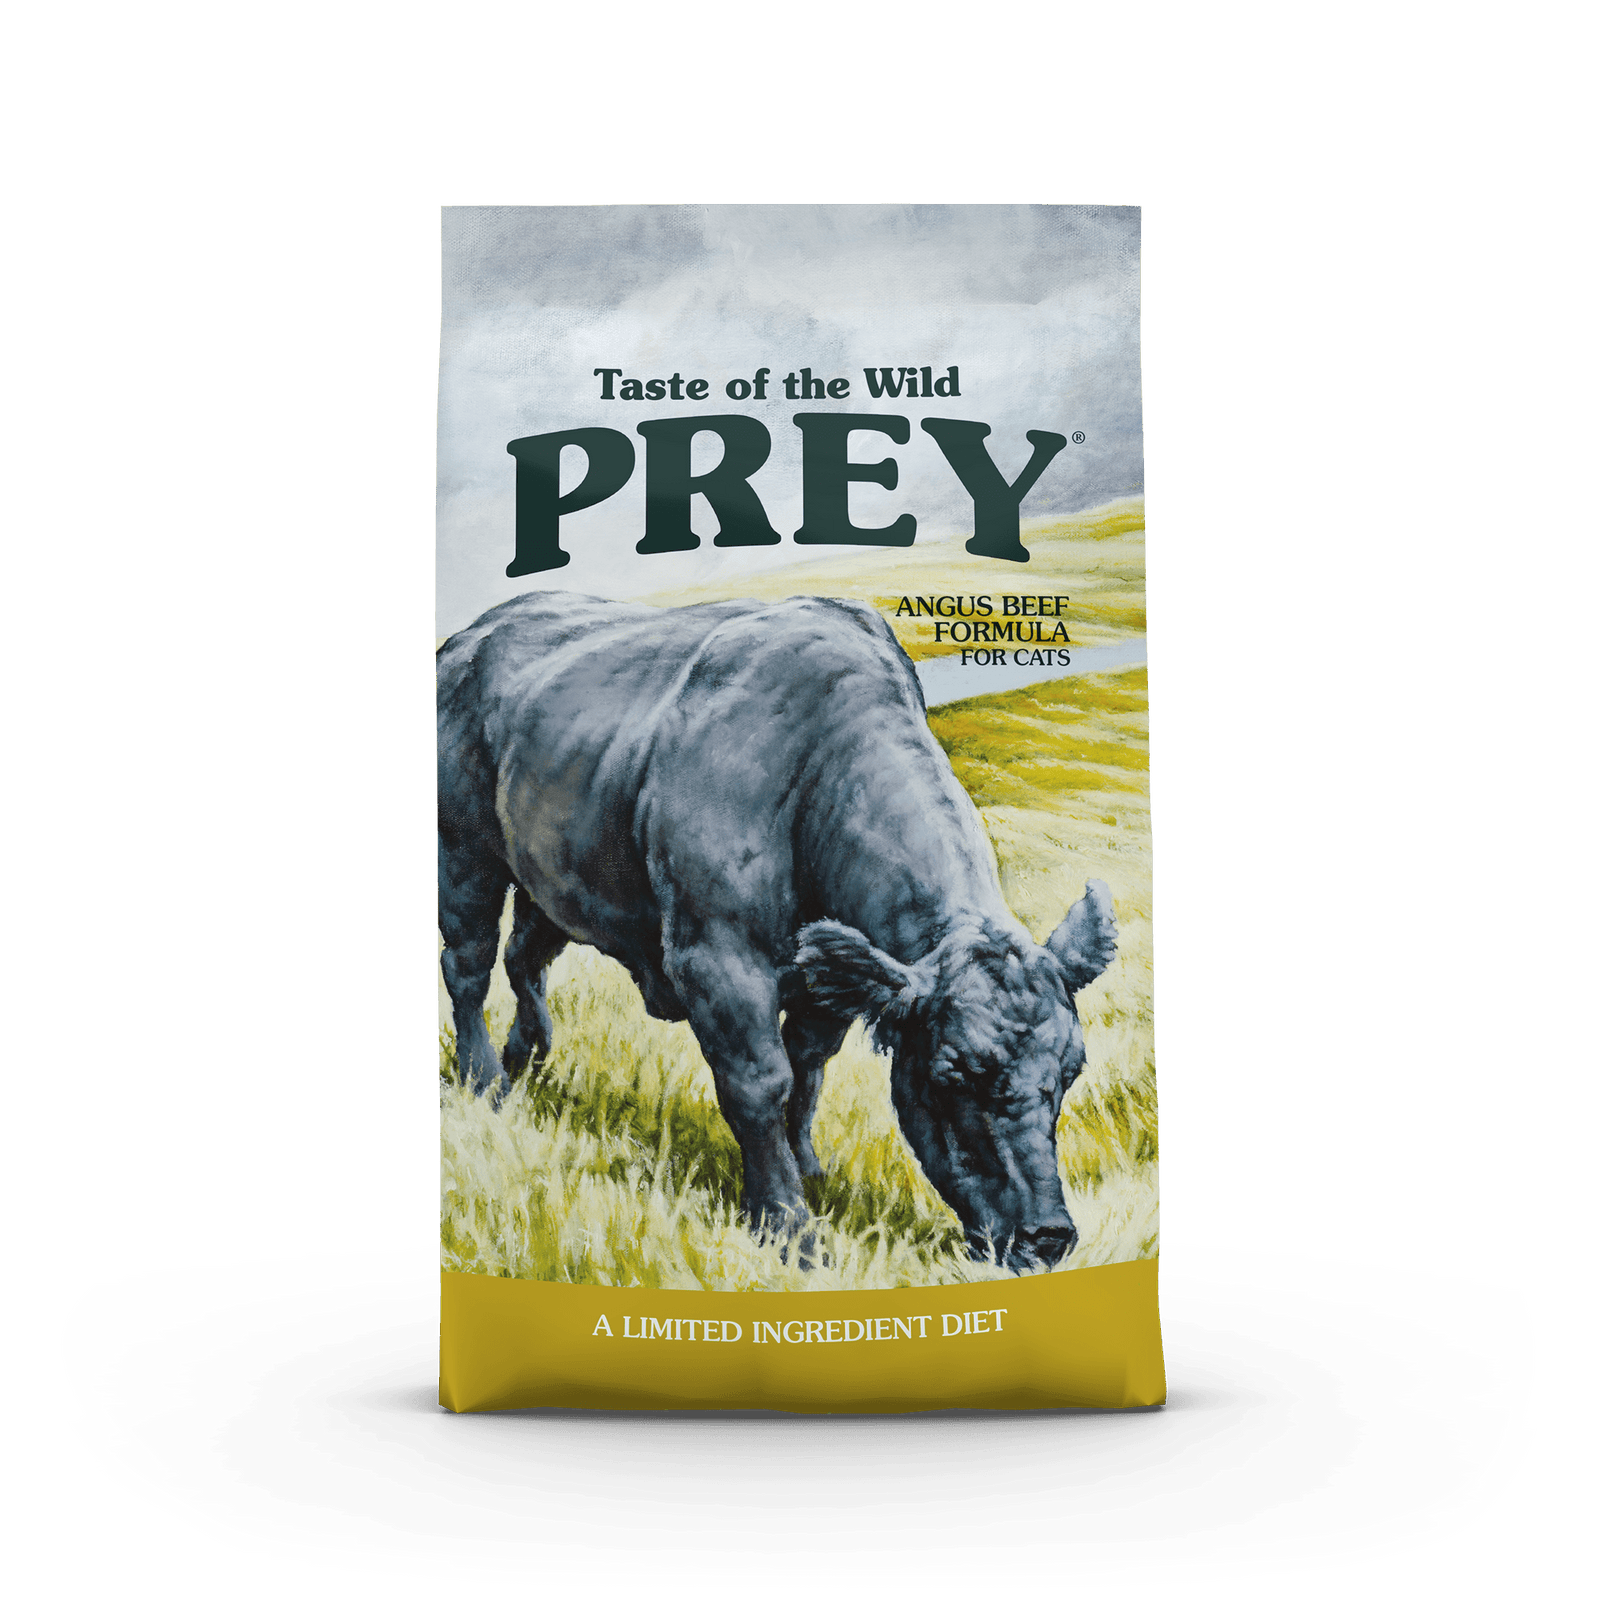 Taste of the Wild Prey Angus Beef Cat Food